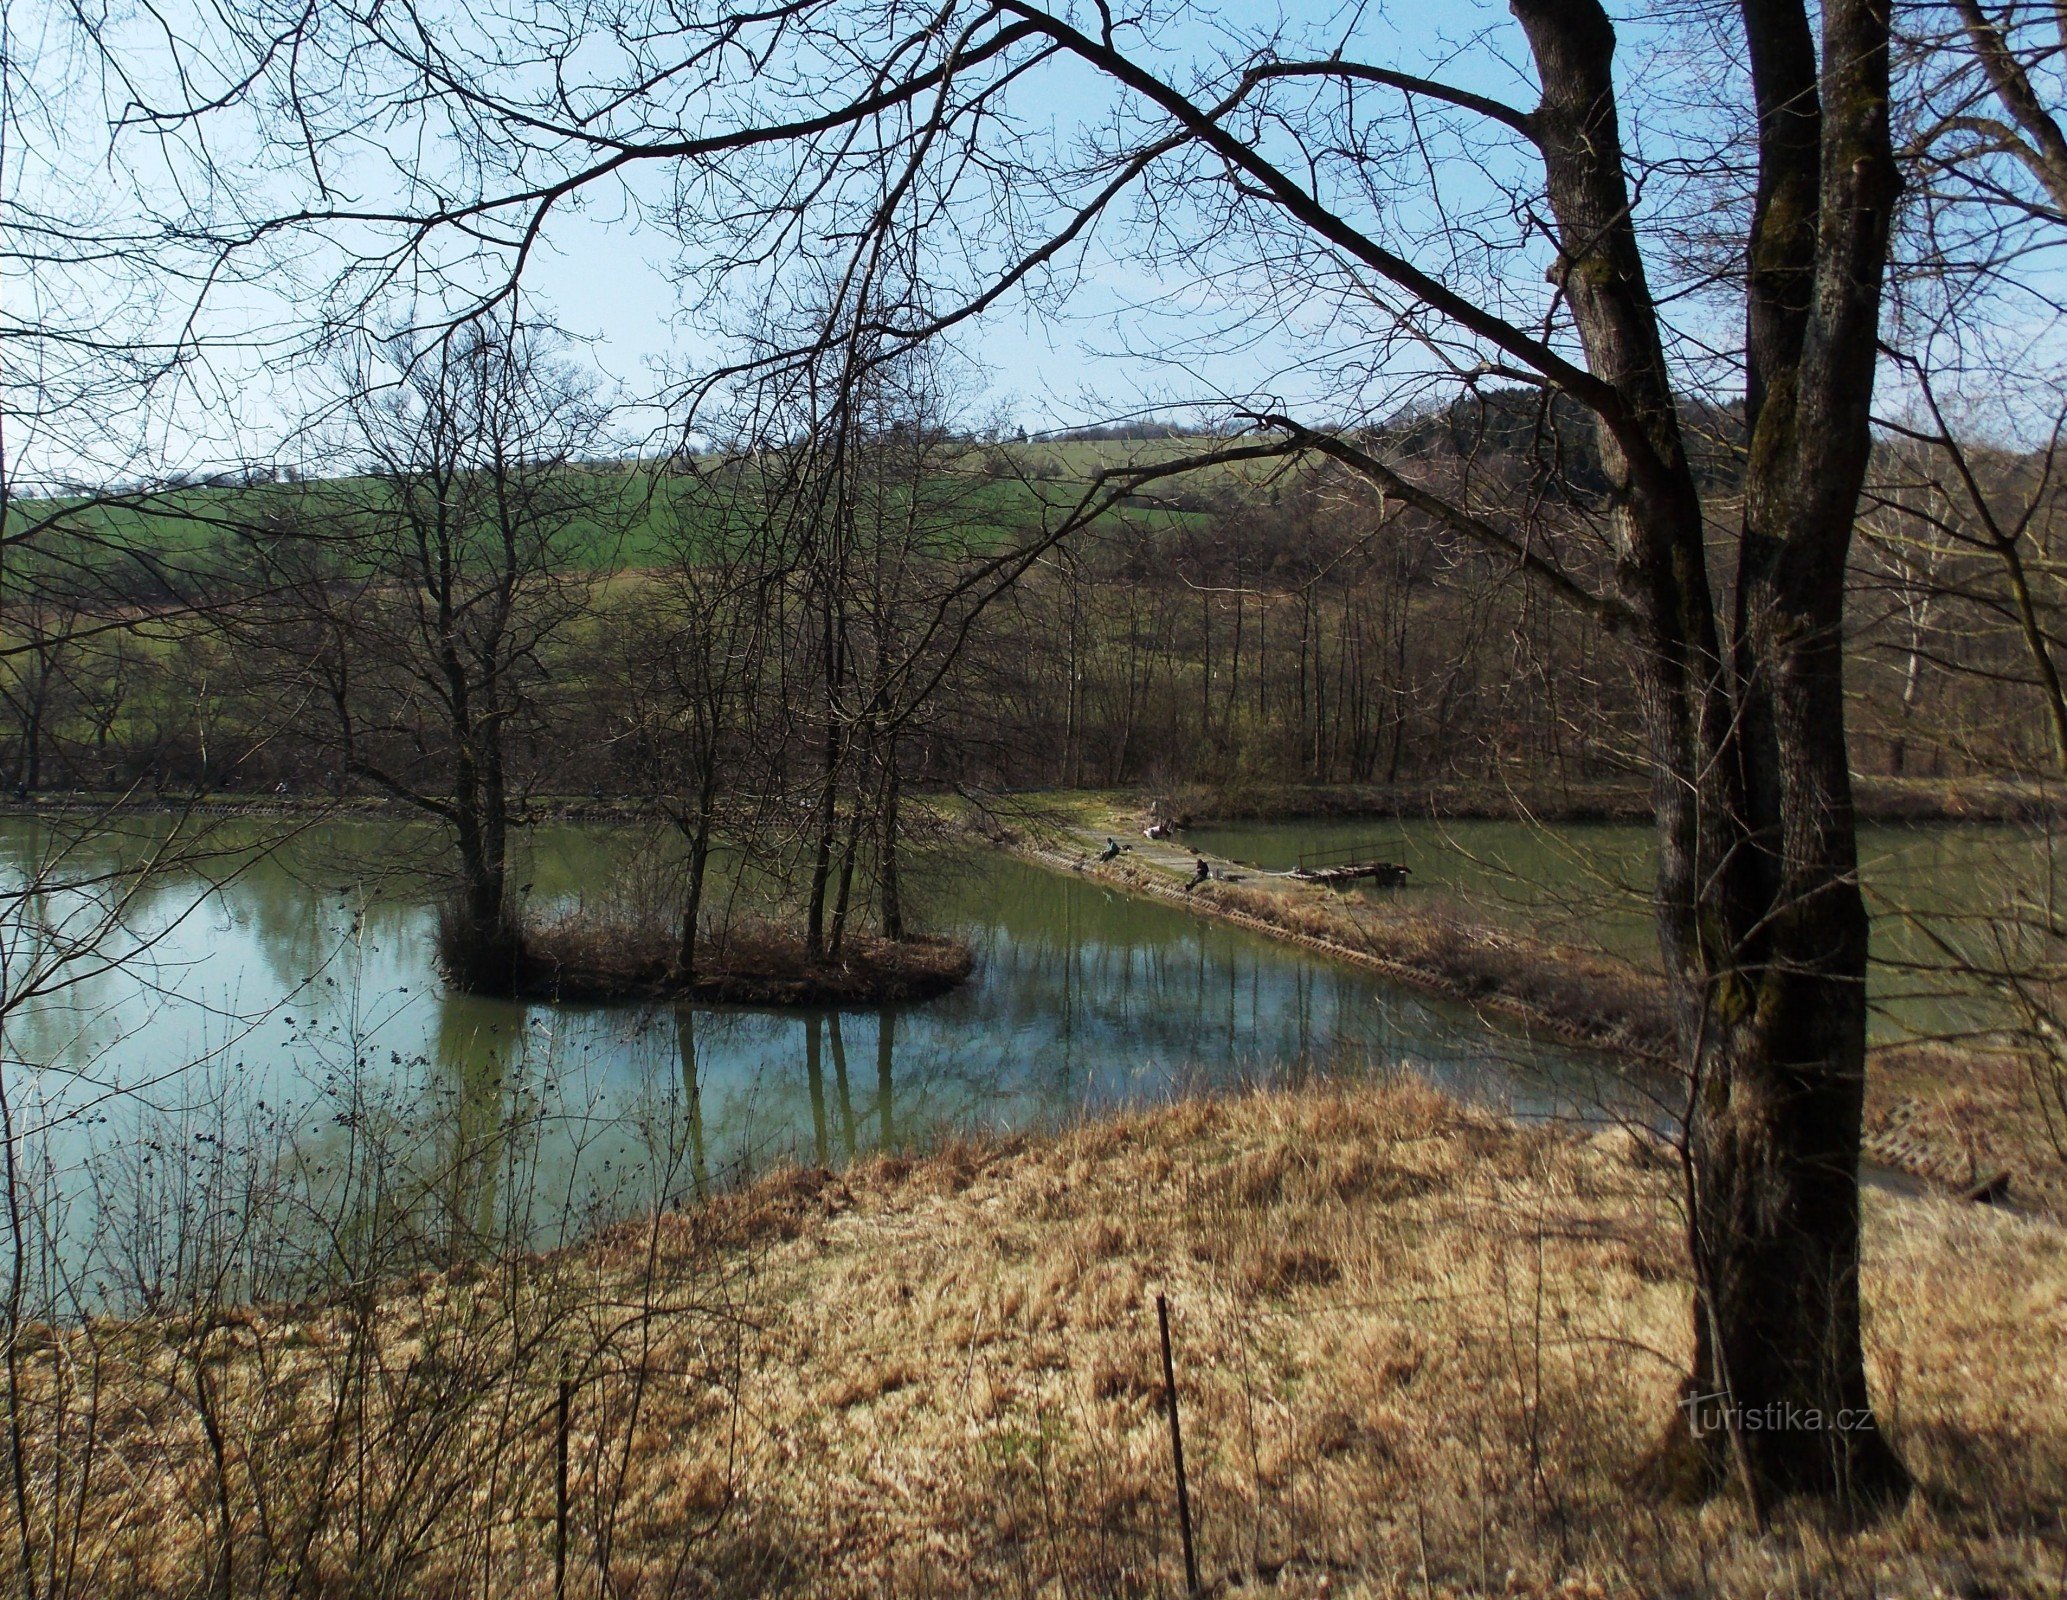 Around the Brumov ponds under Brumov Castle